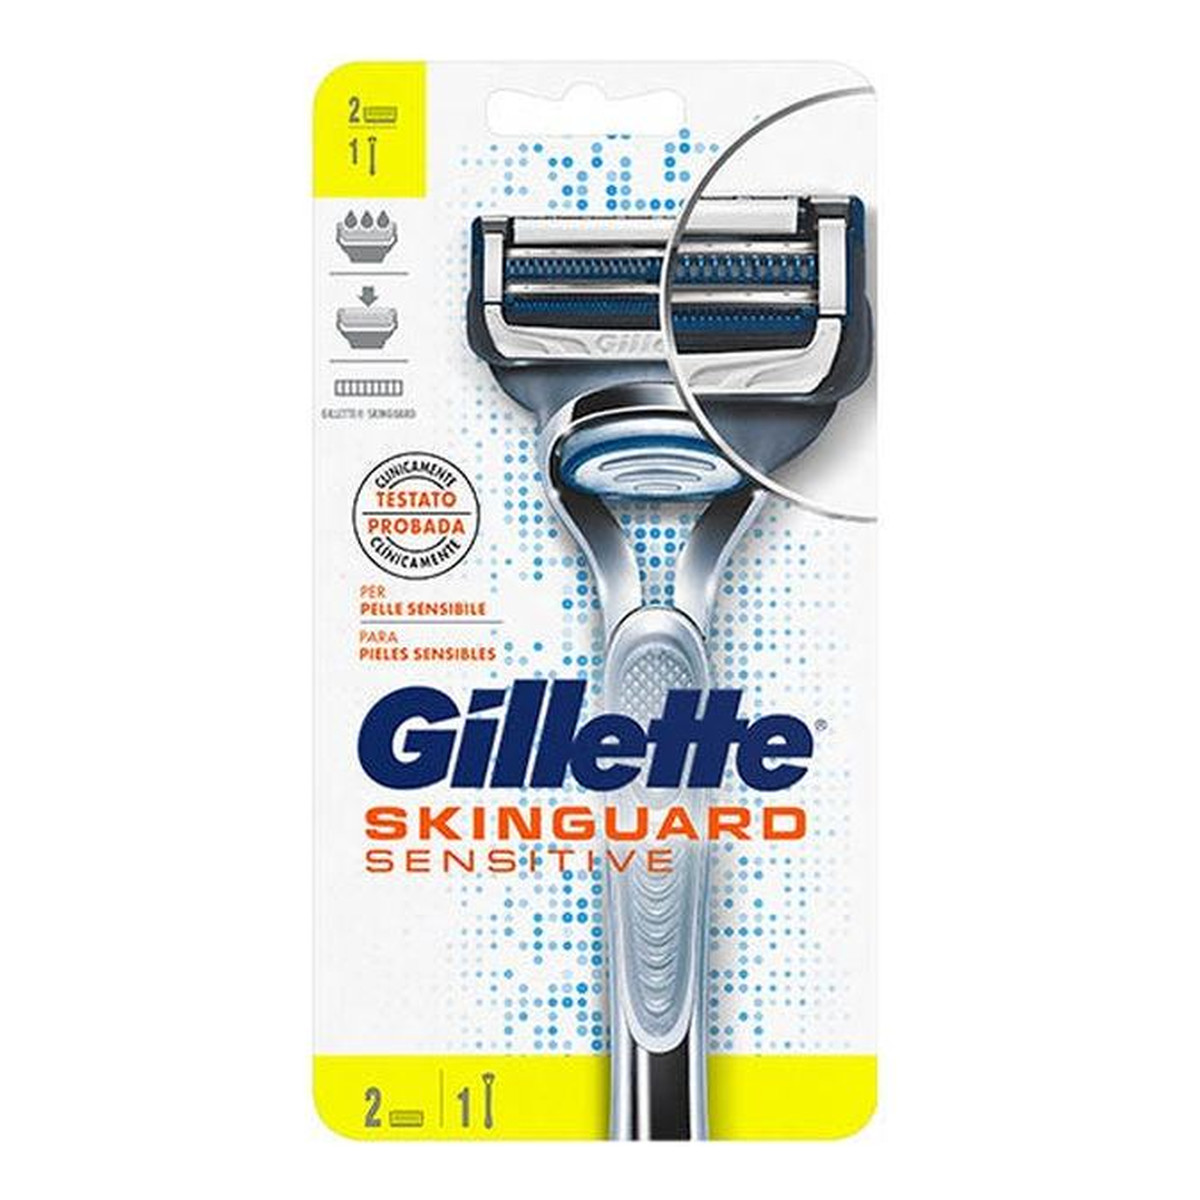 Gillette Skinguard sensitive maszynka do golenia + wymienne ostrze